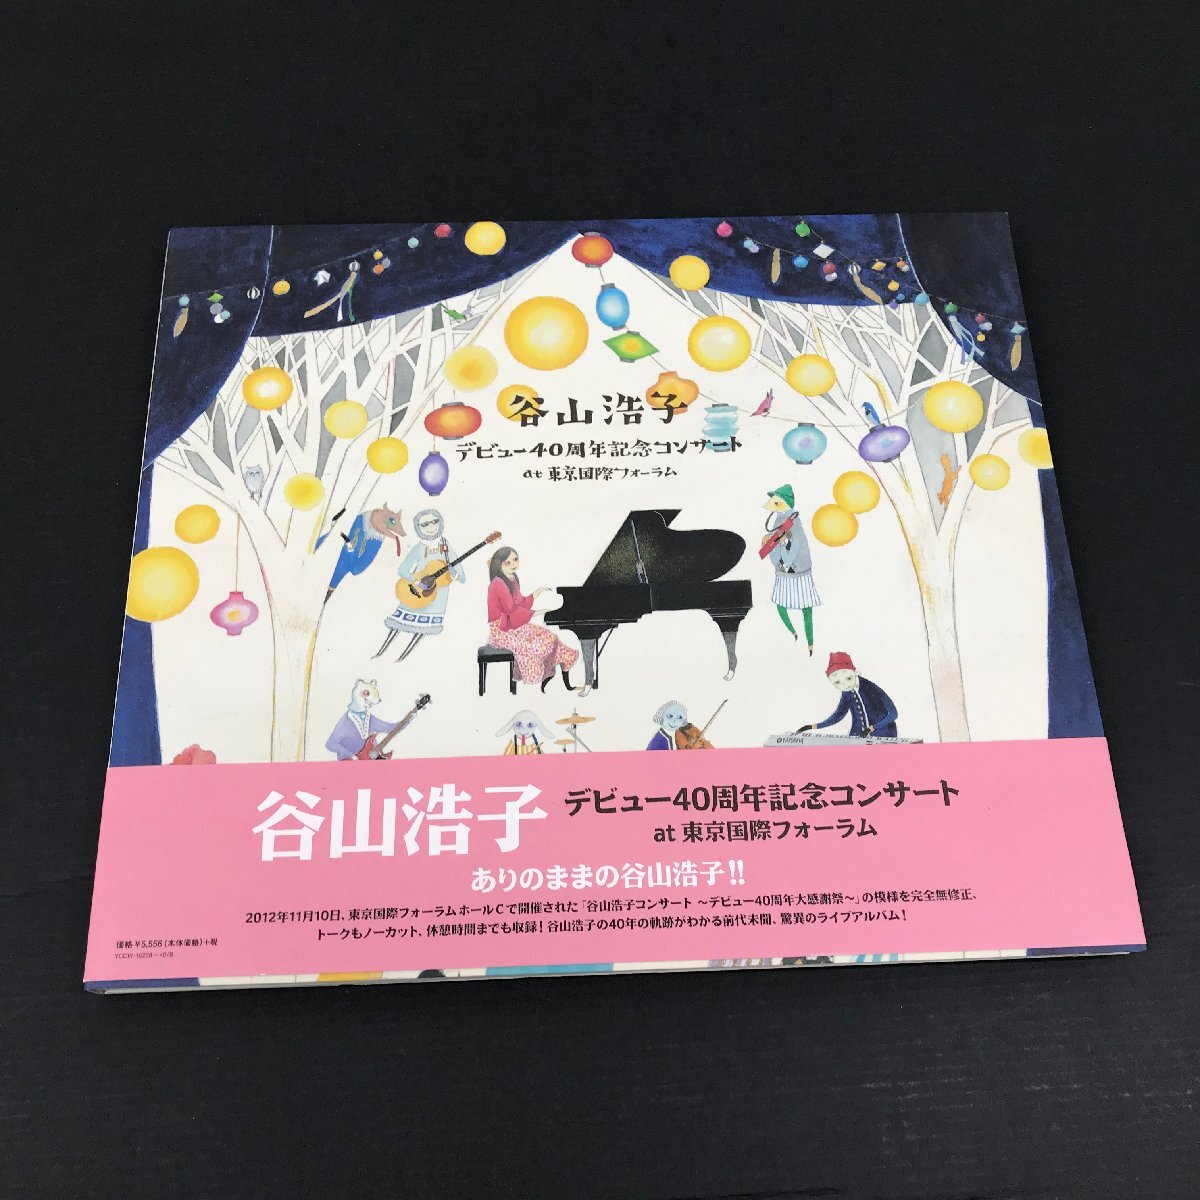 谷山浩子 デビュー40周年記念コンサート at 東京国際フォーラム 初回生産限定 CD DVD ユーズドの画像1